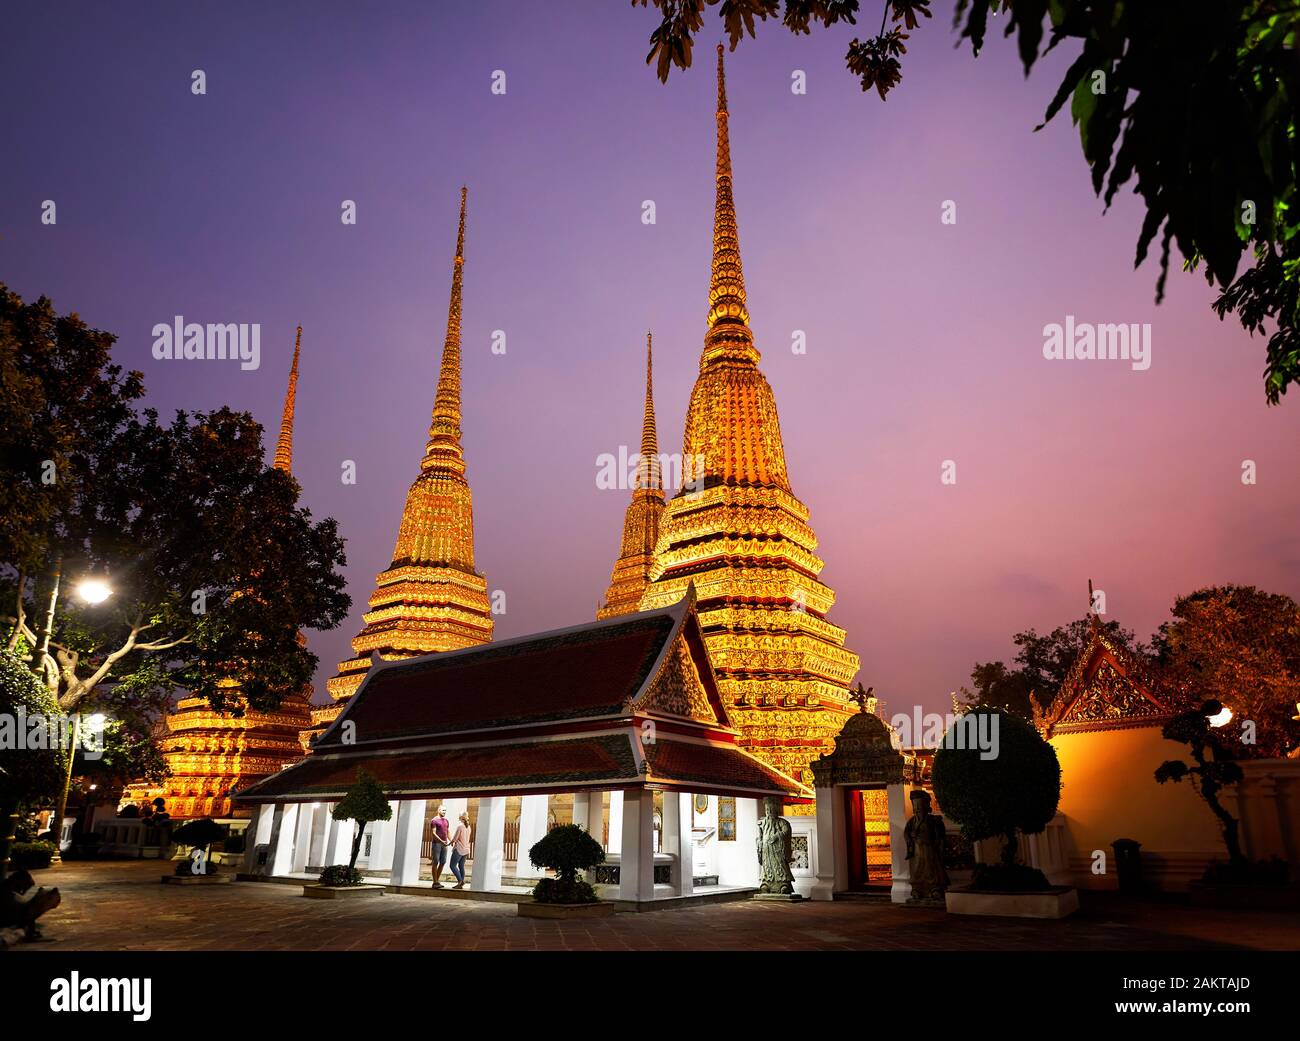 Touristische Paar im Tempel in der Nähe von Golden Chedi des Wat Pho Tempel in Bangkok bei Sonnenuntergang Himmel, Thailand Stockfoto